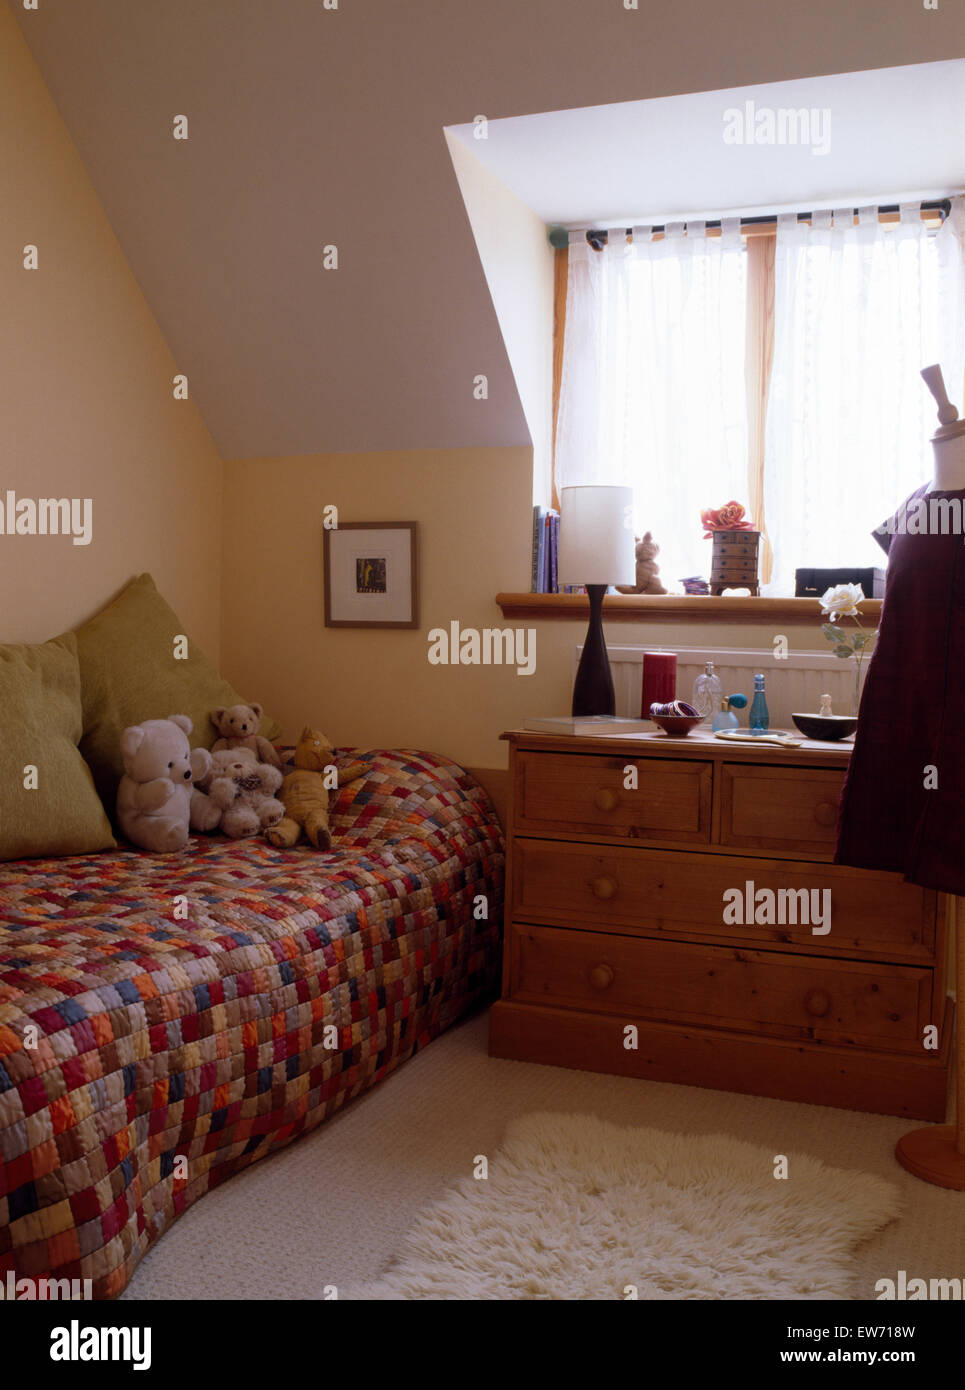 Patchwork quilt auf Einzelbett im Kinderzimmer Dachboden mit Kiefer Kommode  Stockfotografie - Alamy